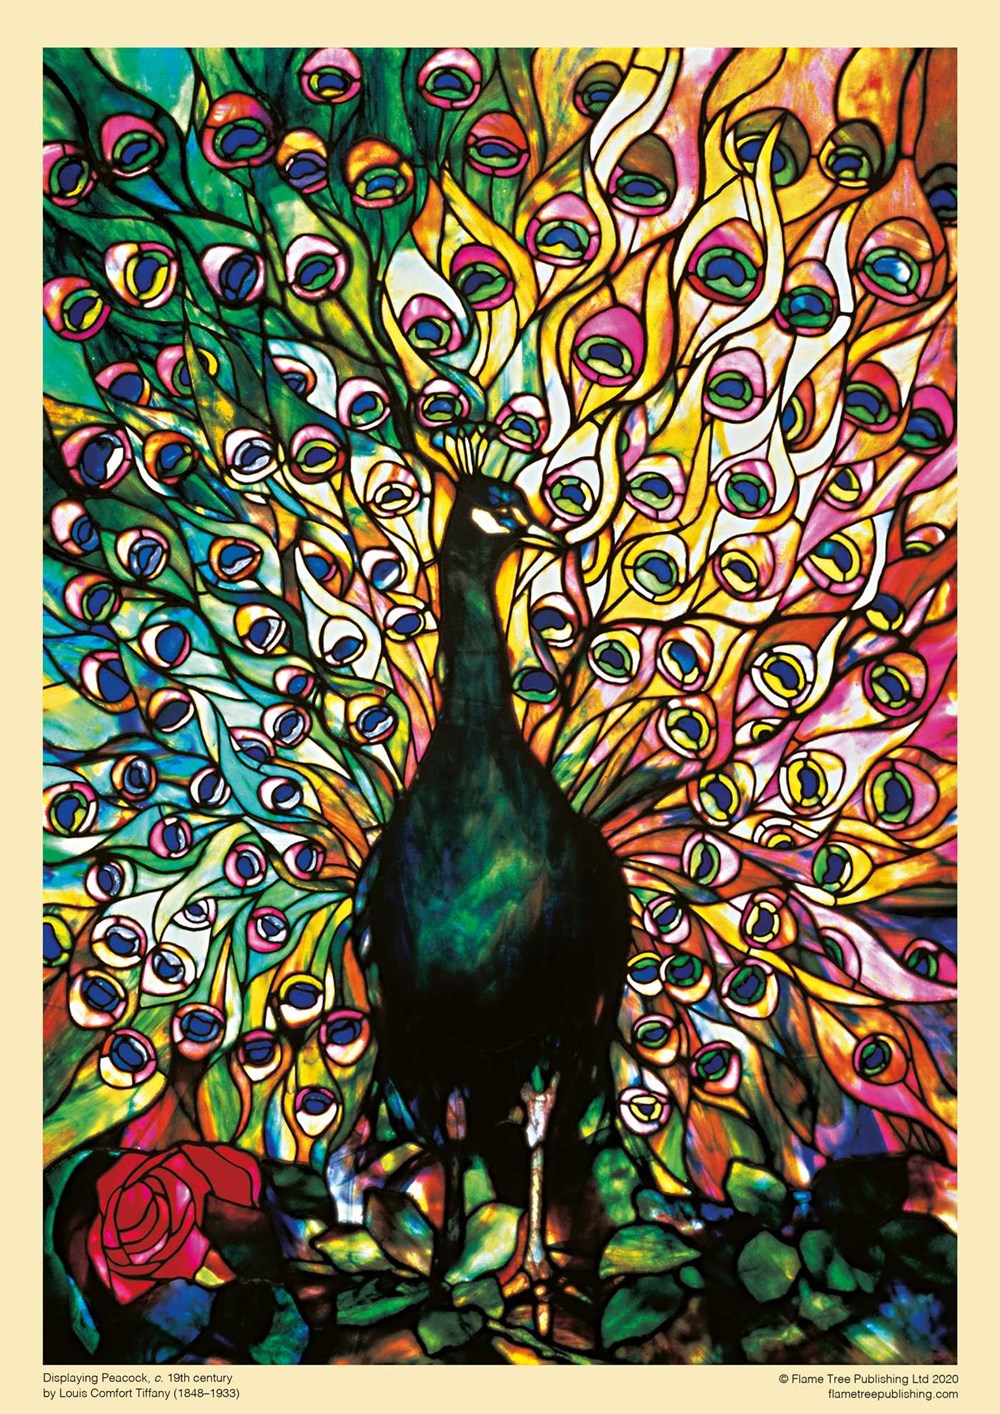 Rompecabezas de 1000 piezas Louis Comfort Tiffany "Displaying Peacock"